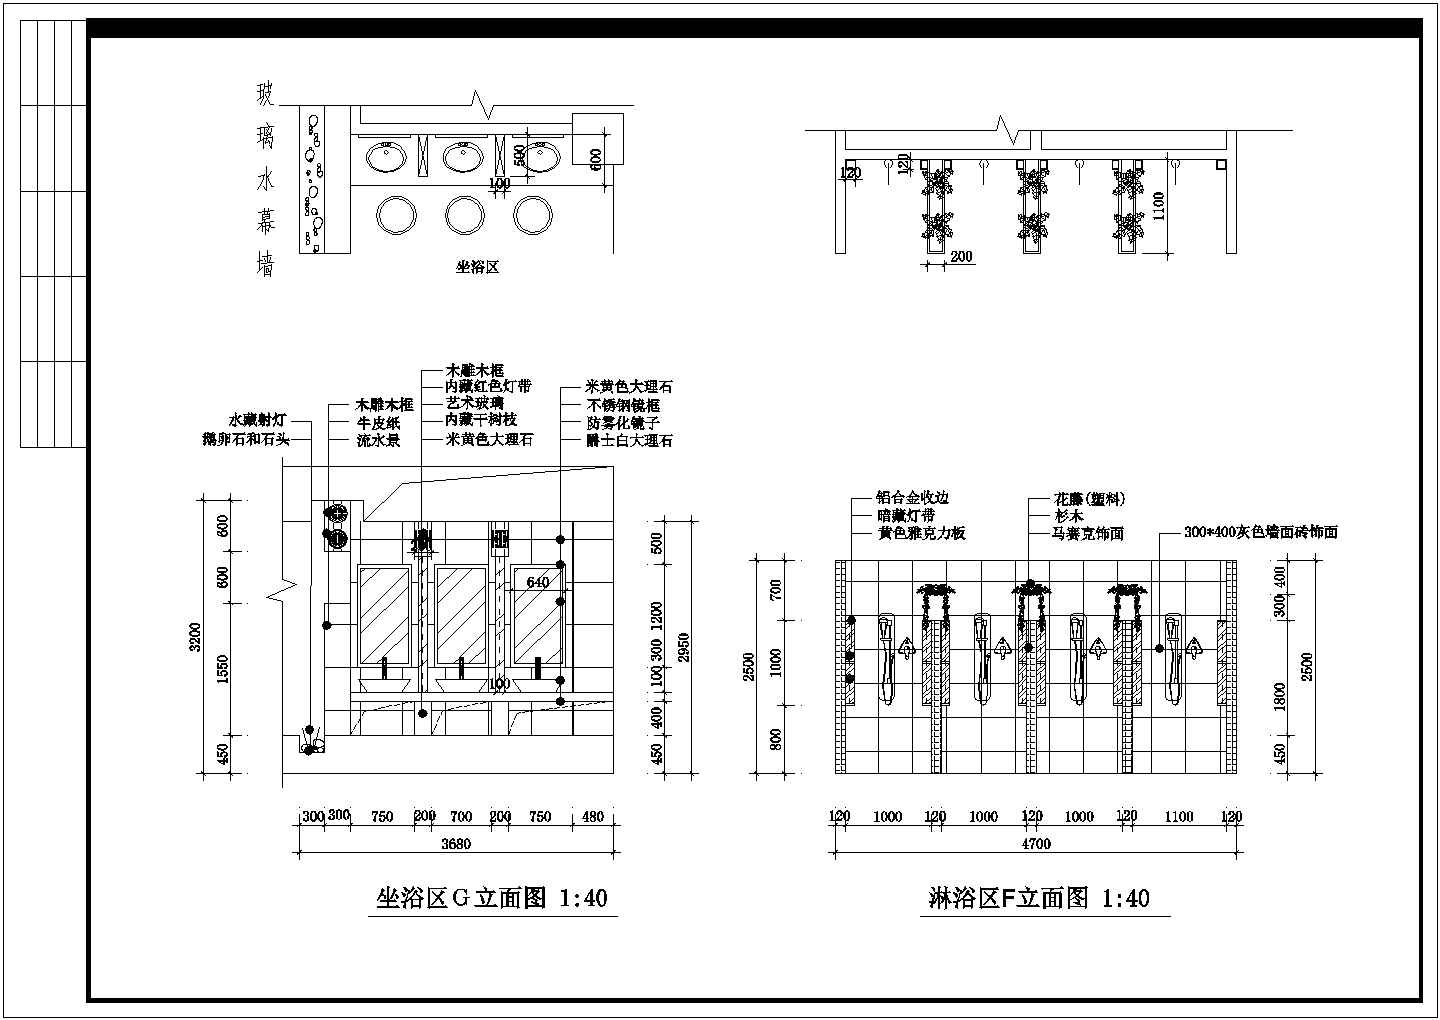 南京某大型桑拿会所全套设计装修cad图(含吊顶布置图)